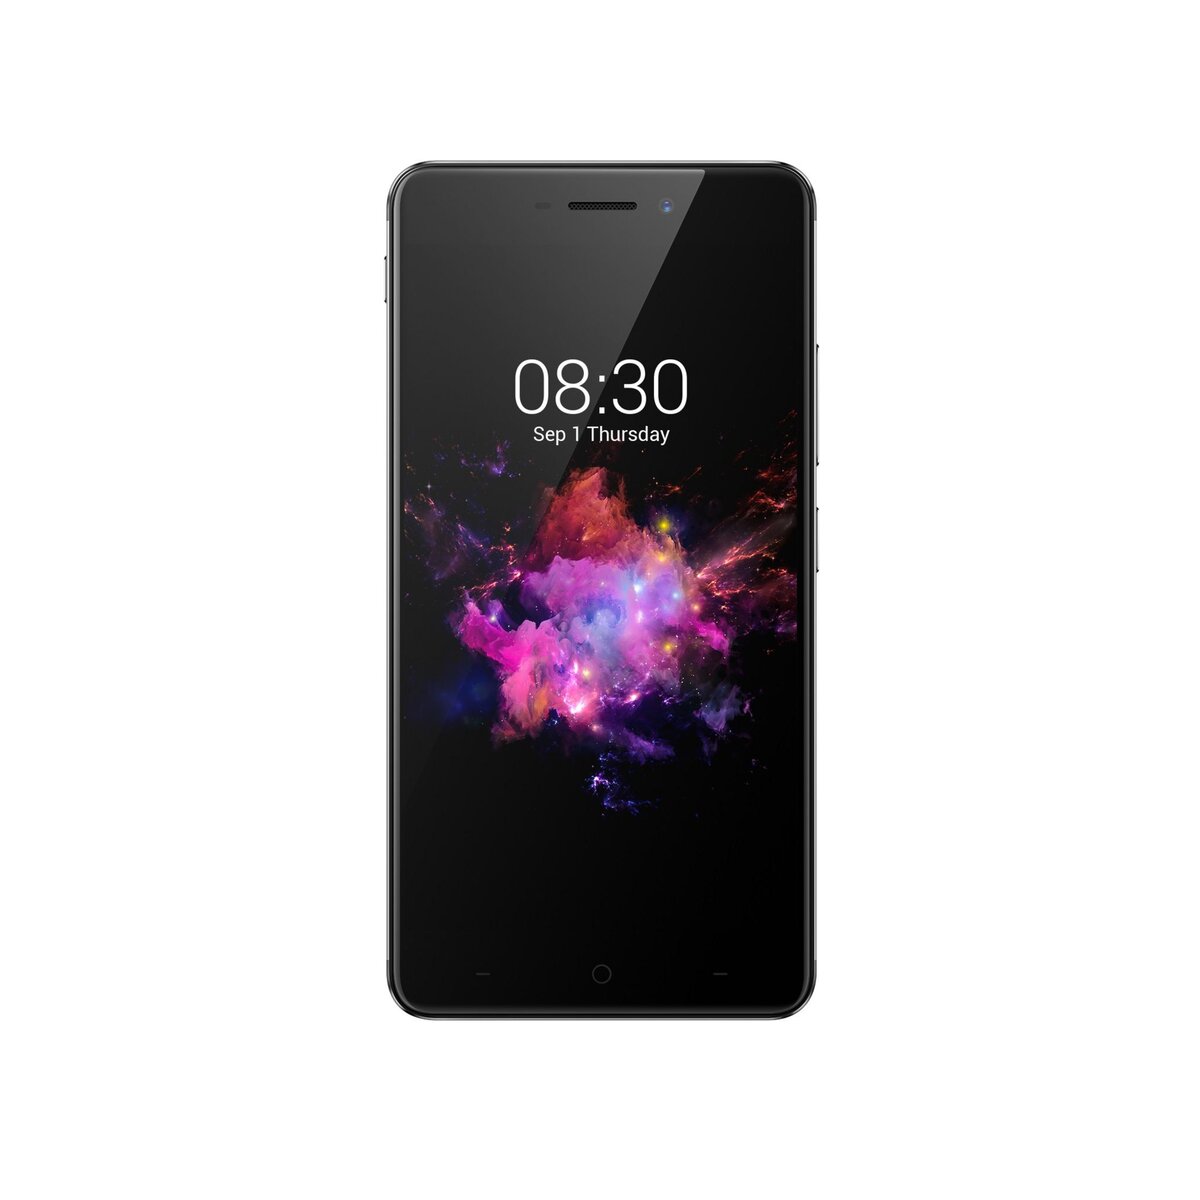 NEFFOS Smartphone X1 Max - 32 Go - 5.5 pouces - Gris - Double SIM